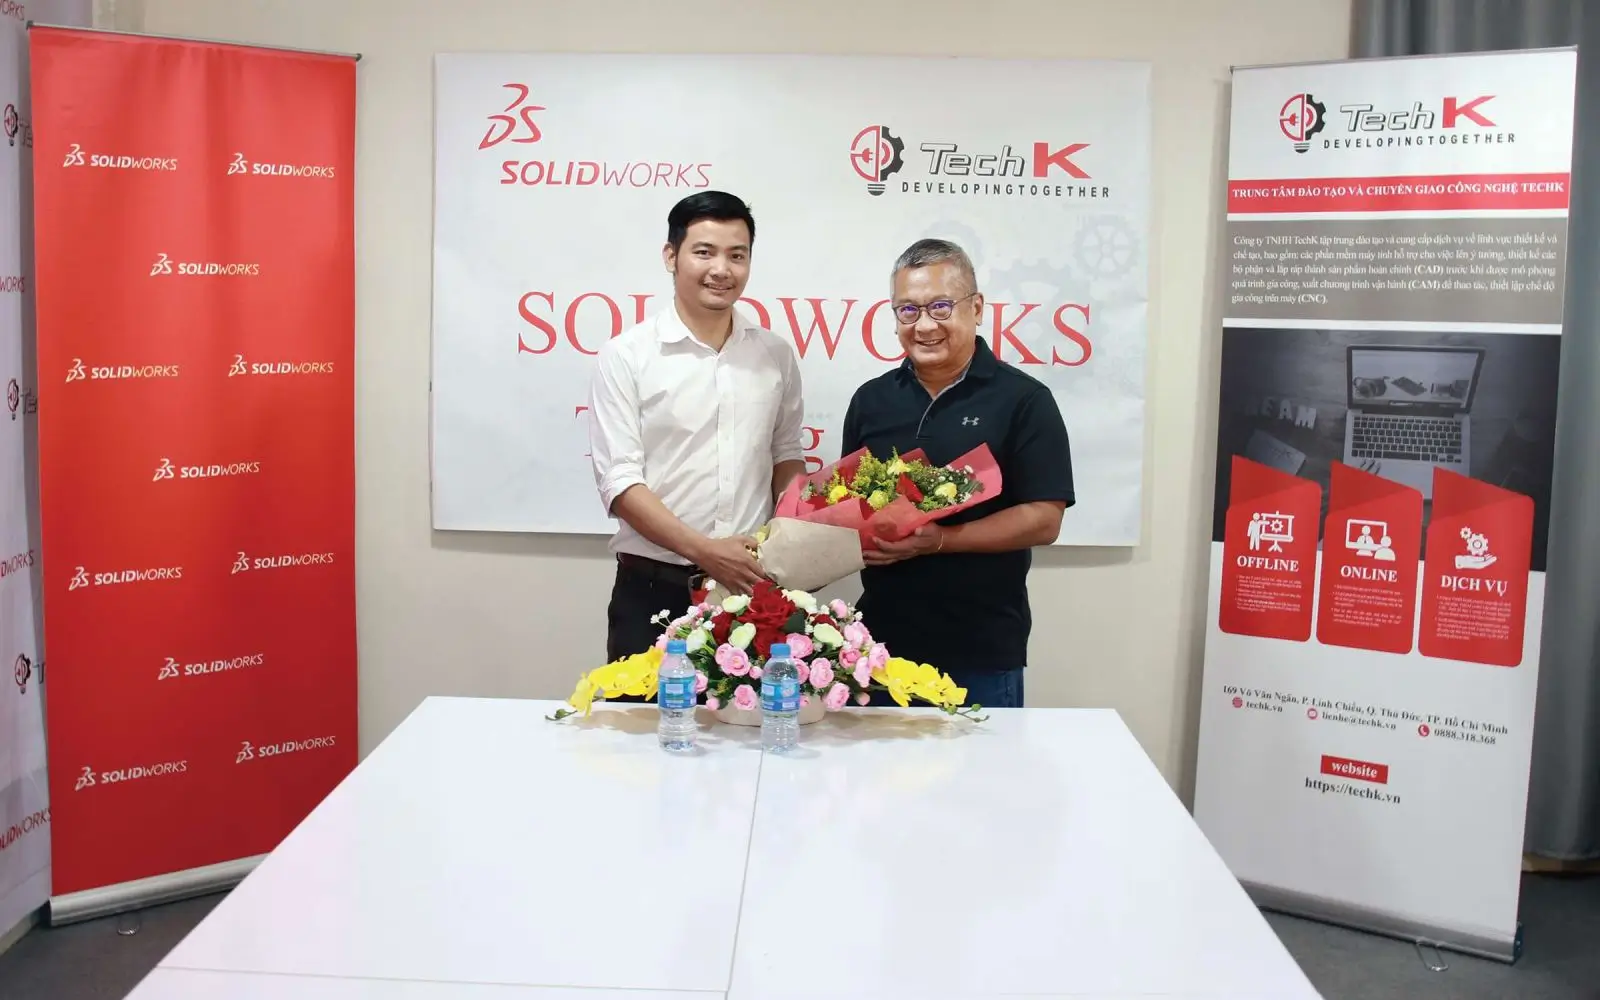 TechK - Trung tâm tổ chức thi chứng chỉ Solidworks quốc tế chính hãng